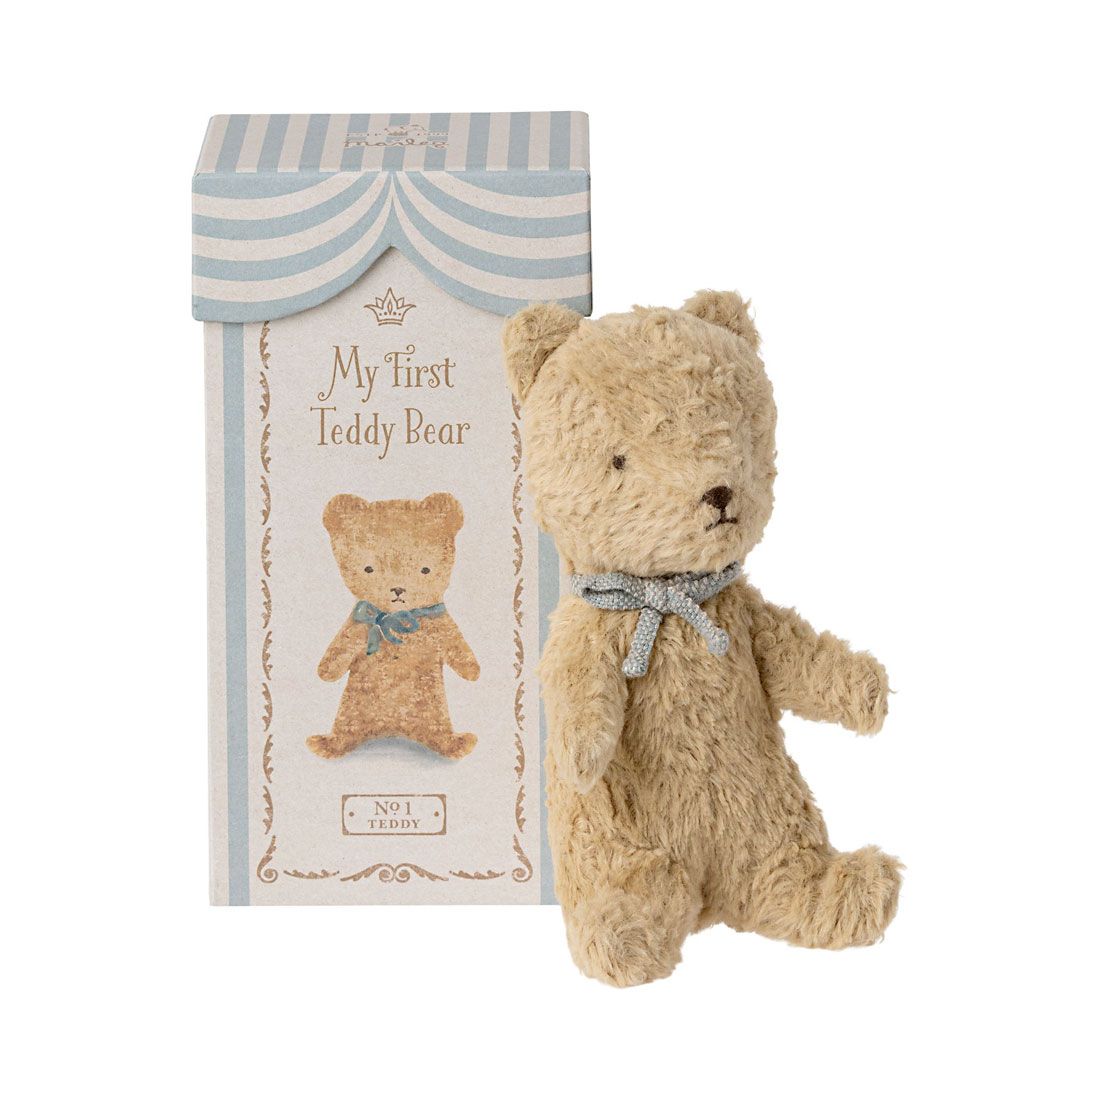 Maileg My First Teddy barselgave med sandfarvet teddy bjørn i lyseblå æske.